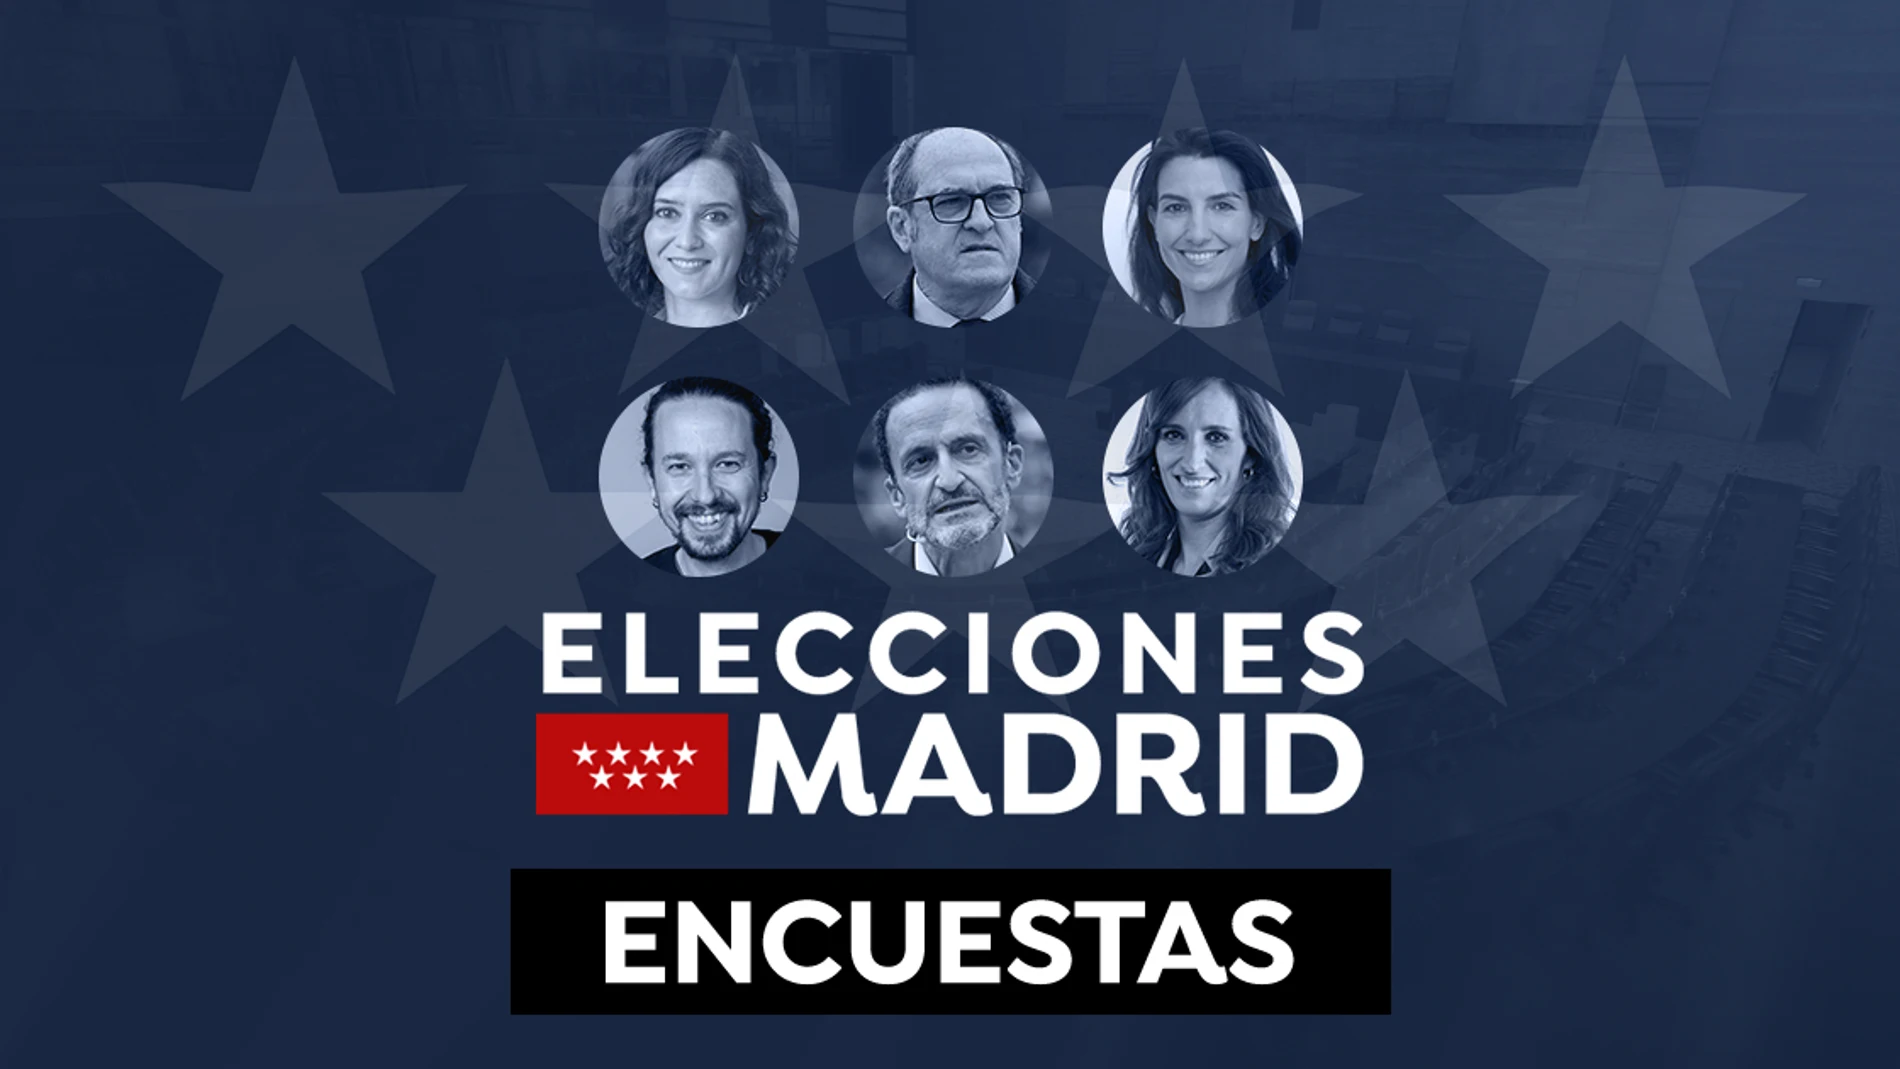 Este será el resultado de las elecciones de Madrid según las últimas encuestas y sondeos